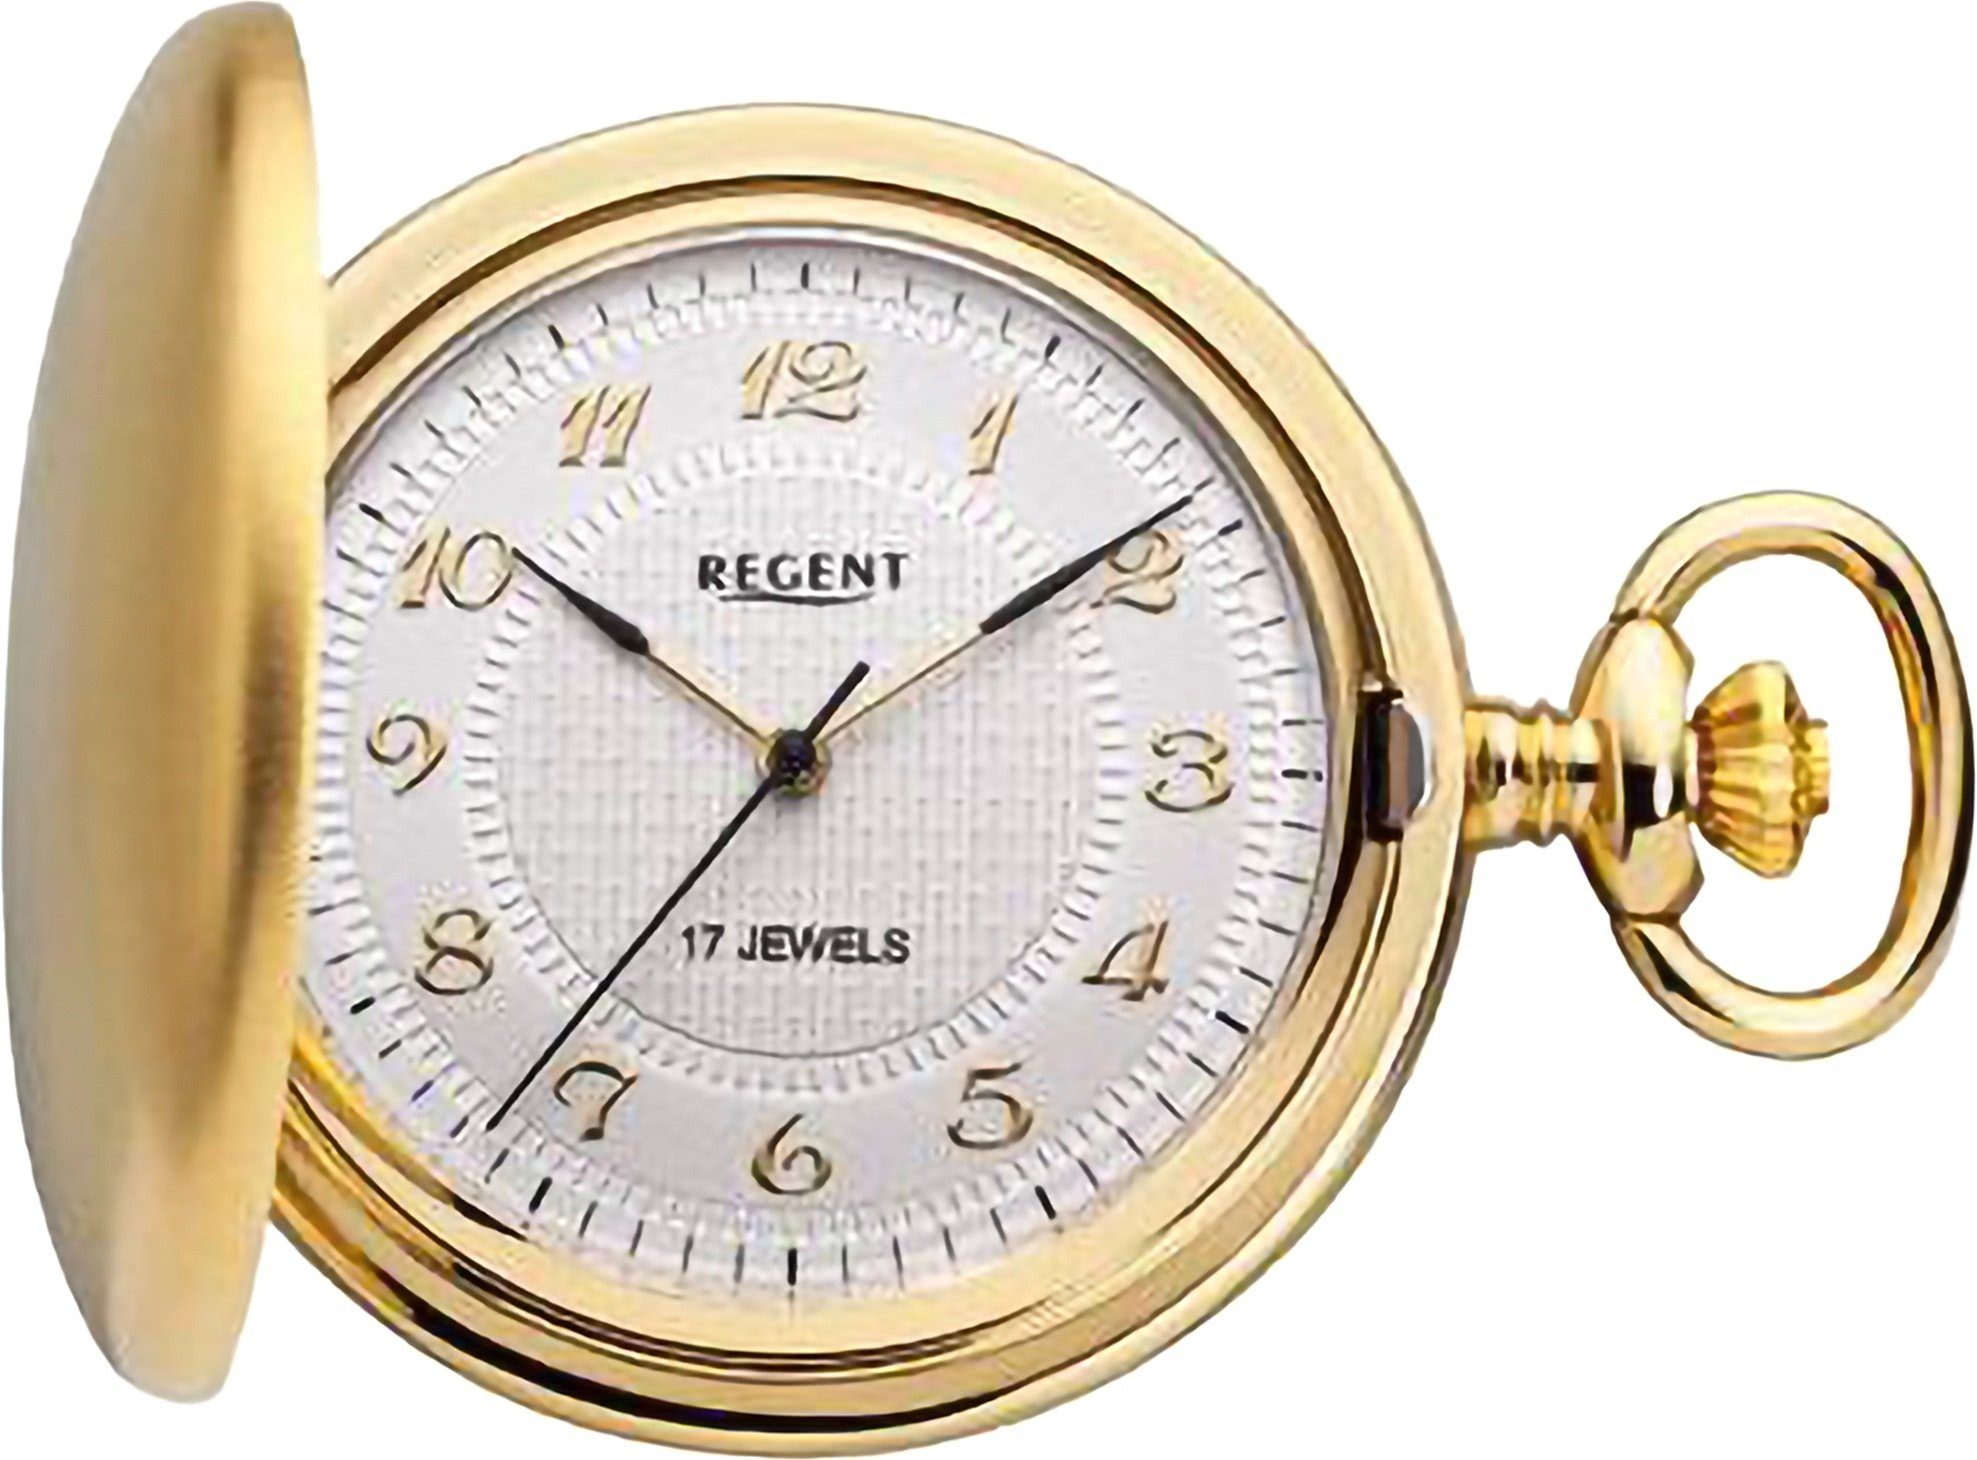 Regent Taschenuhr Regent Herren Taschenuhr Analog Gehäuse, (Analoguhr),  Herren Taschenuhr rund, extra groß (ca. 44mm), Metall, Elegant, Uhrzeit